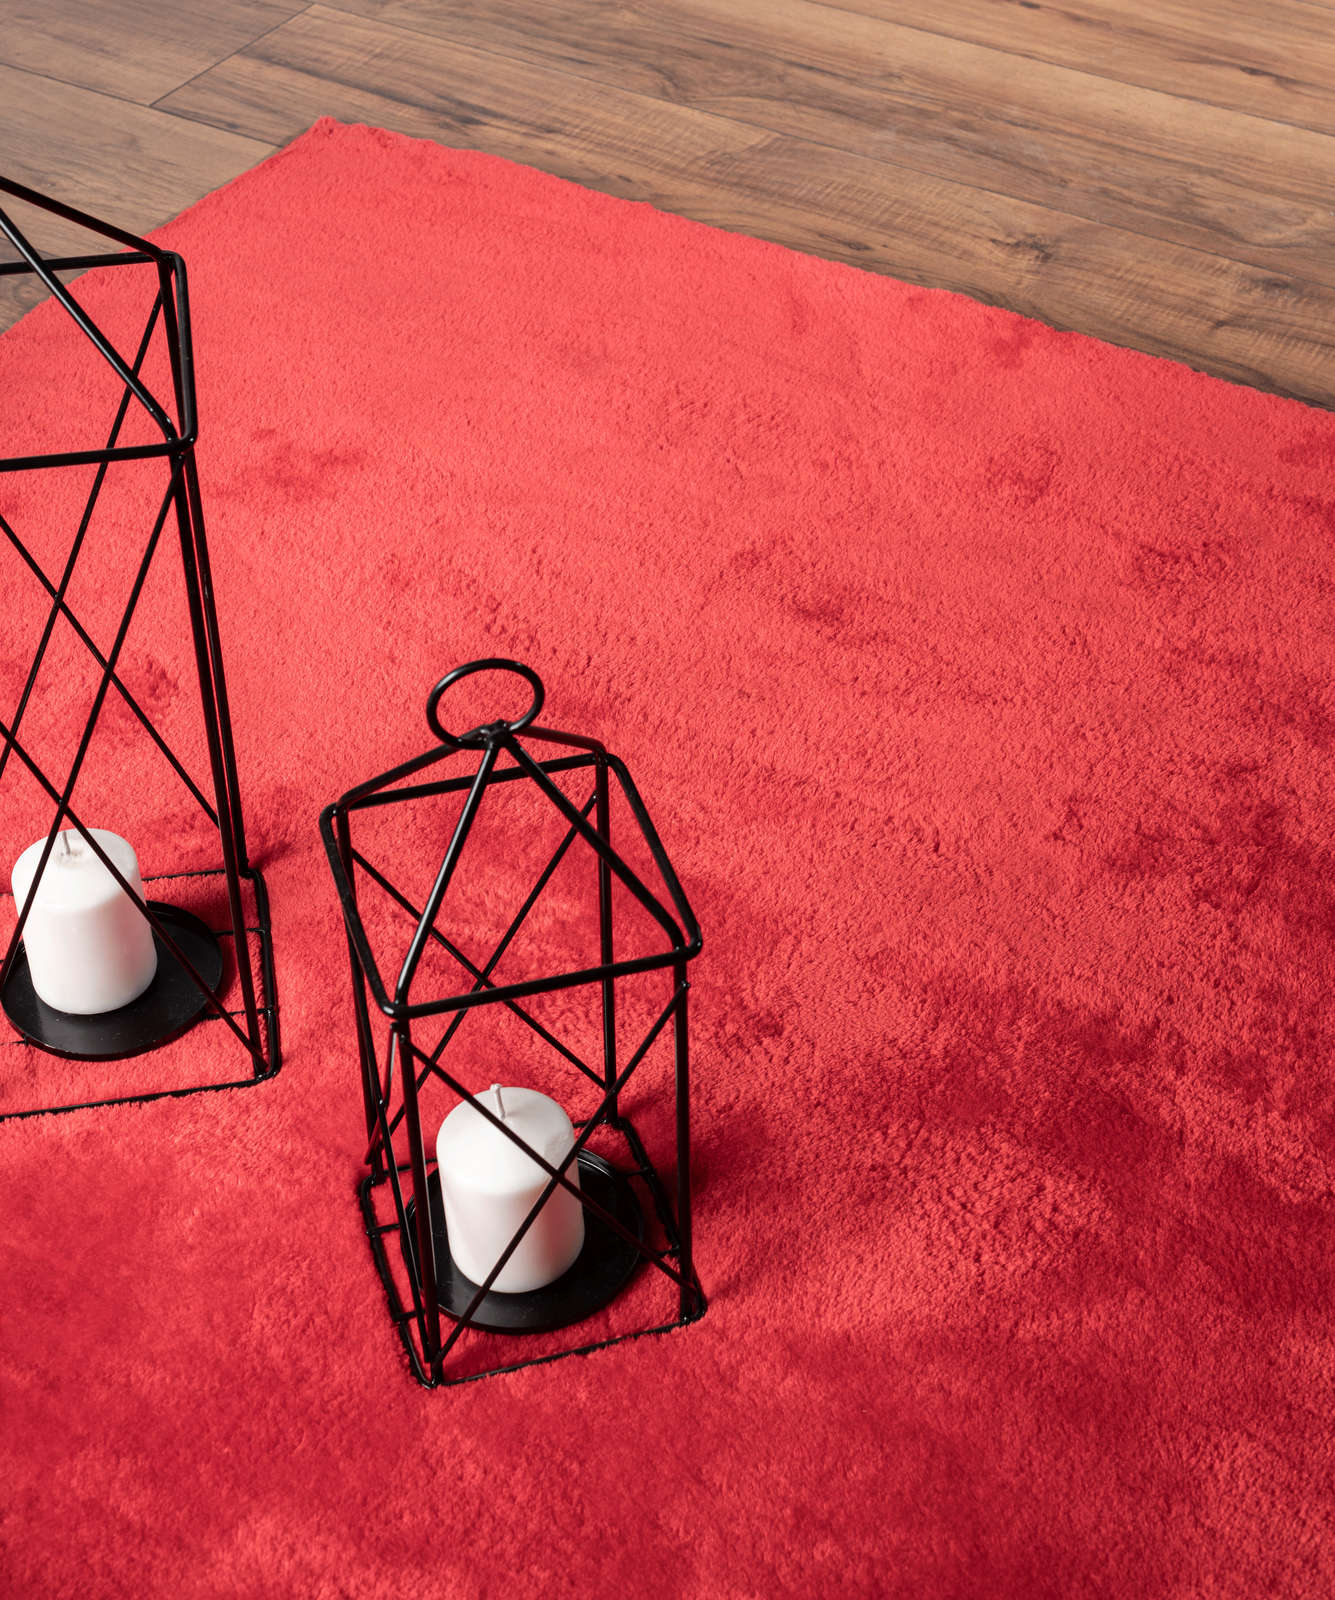             Extra zacht hoogpolig tapijt in rood - 170 x 120 cm
        